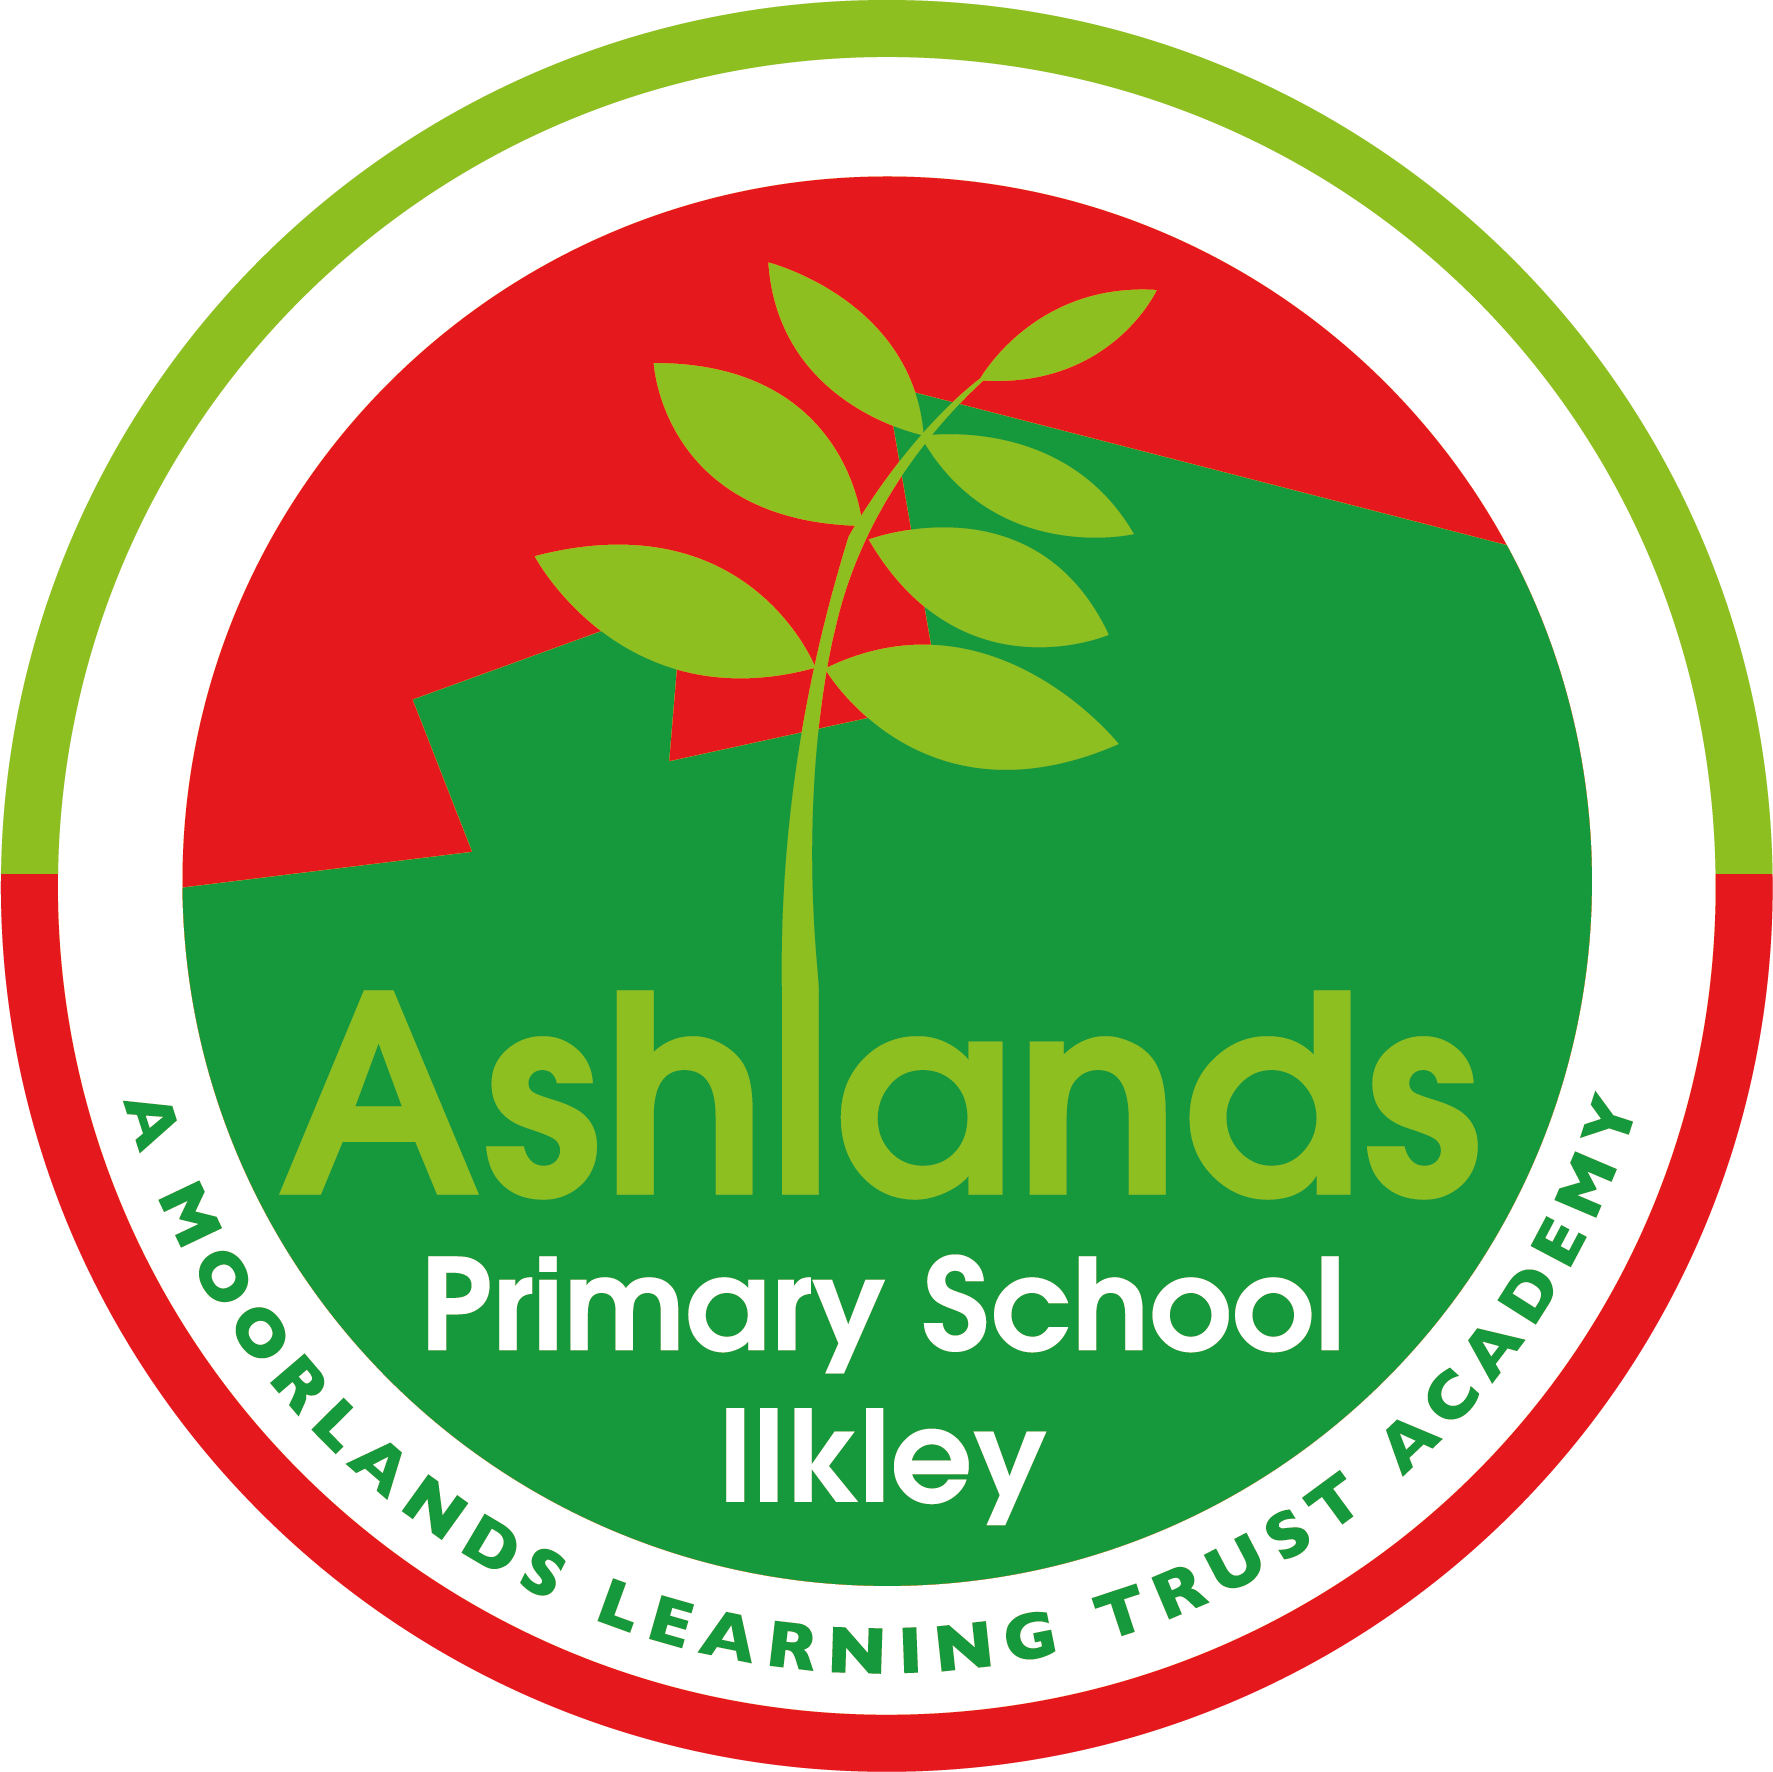 Ashlands Primary School logo